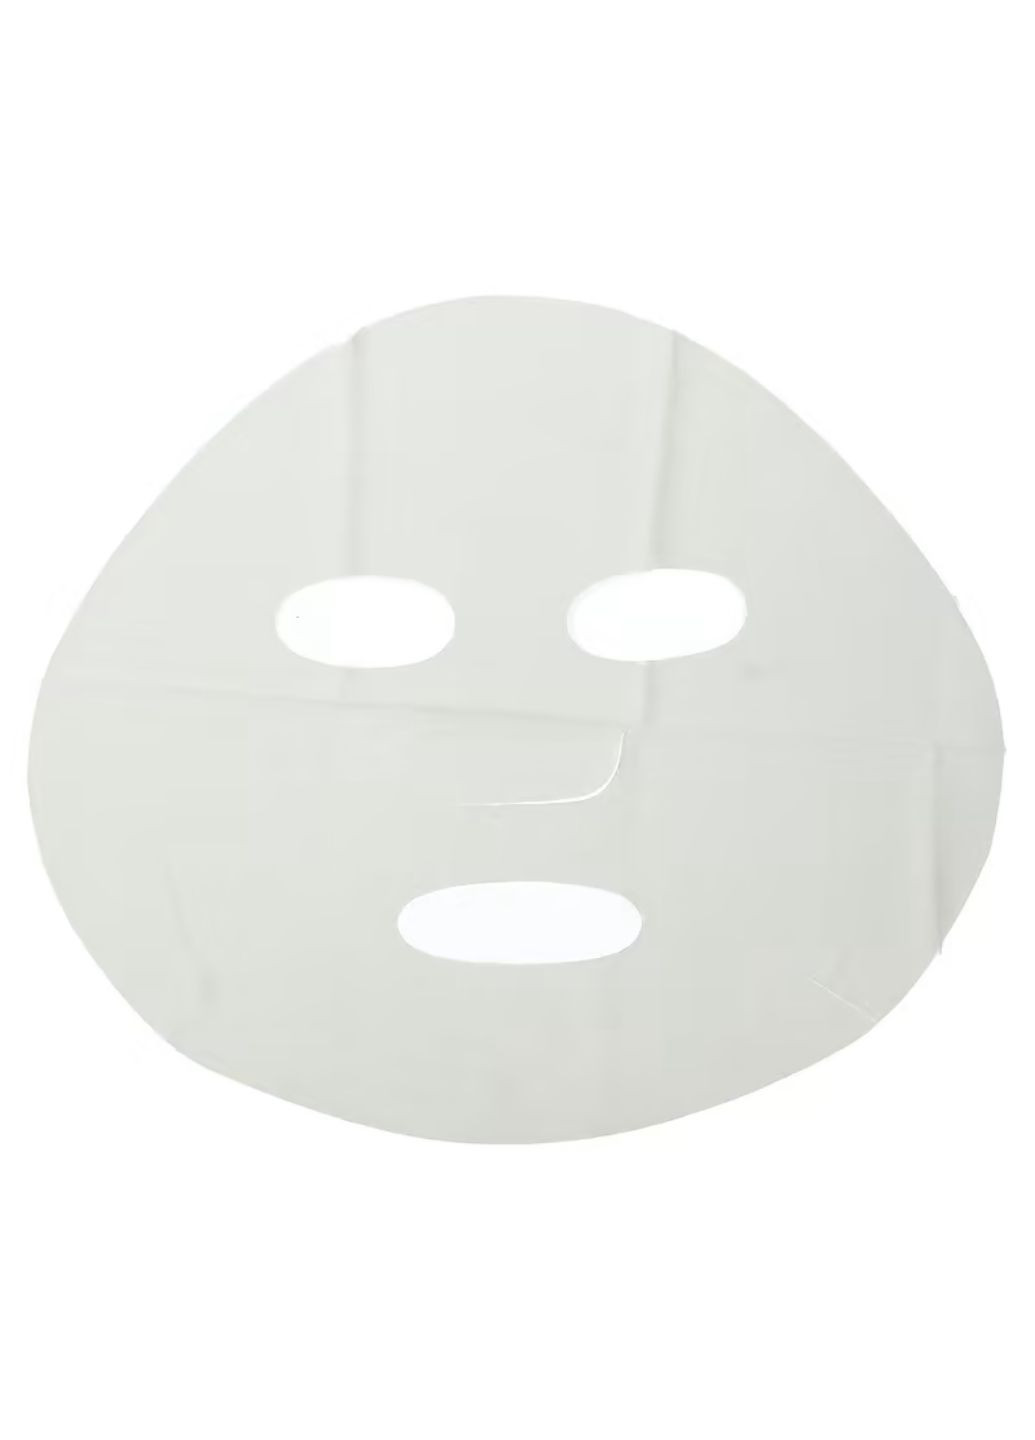 Тканевая маска для лица Pure Skin, 30 мл Bioaqua (276002622)